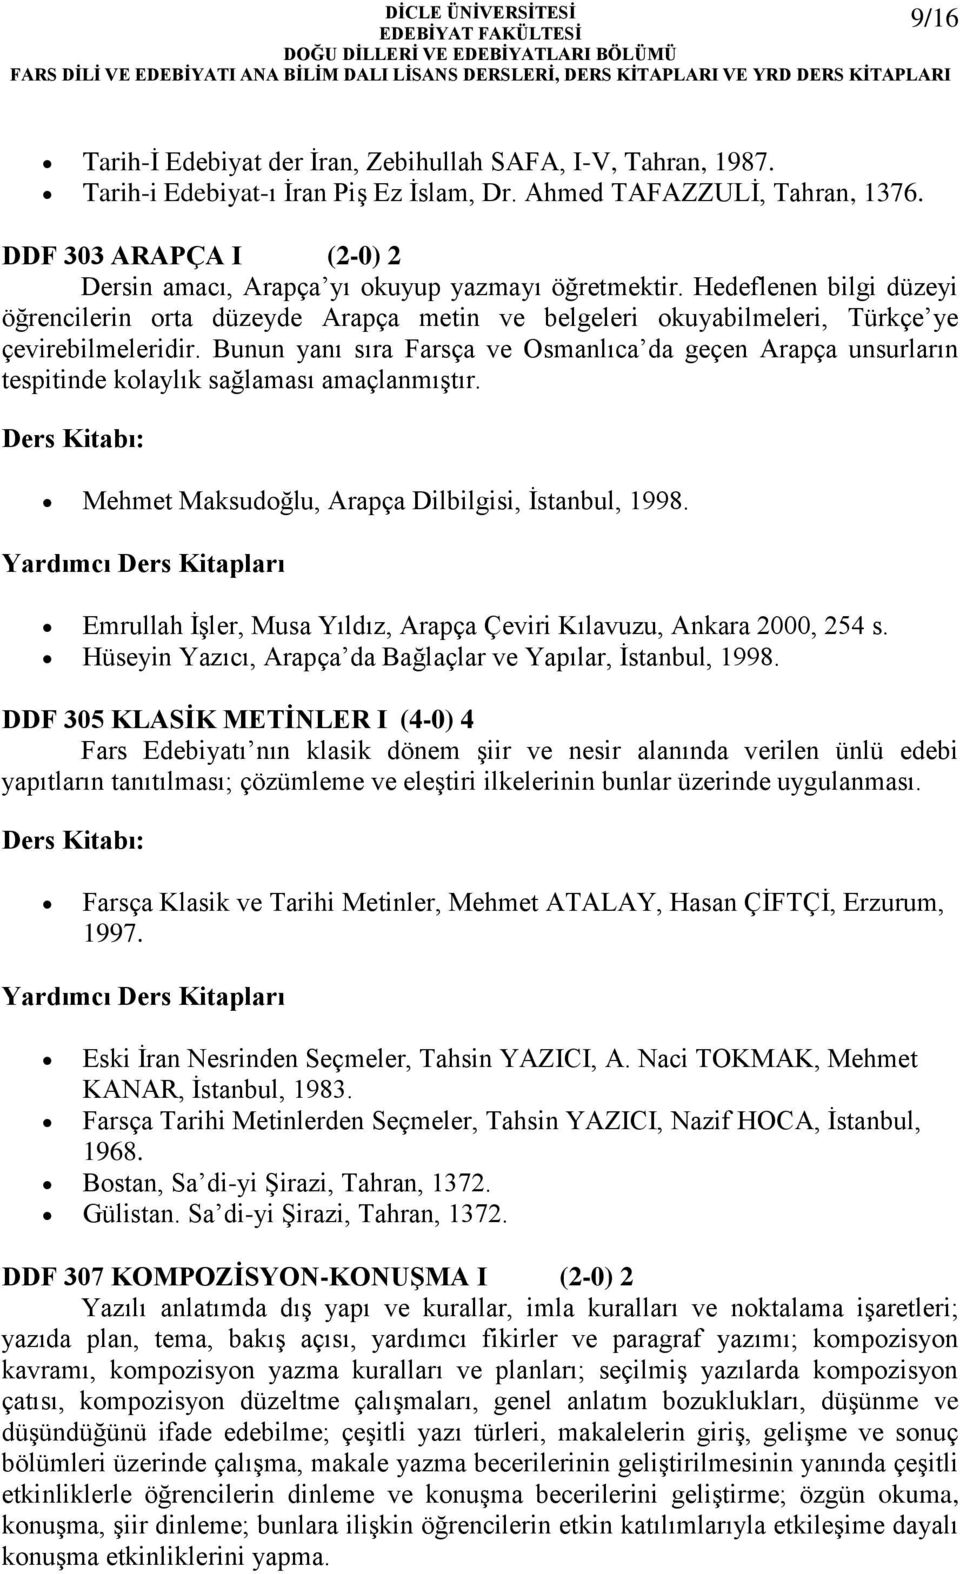 Bunun yanı sıra Farsça ve Osmanlıca da geçen Arapça unsurların tespitinde kolaylık sağlaması amaçlanmıştır. Mehmet Maksudoğlu, Arapça Dilbilgisi, İstanbul, 1998.